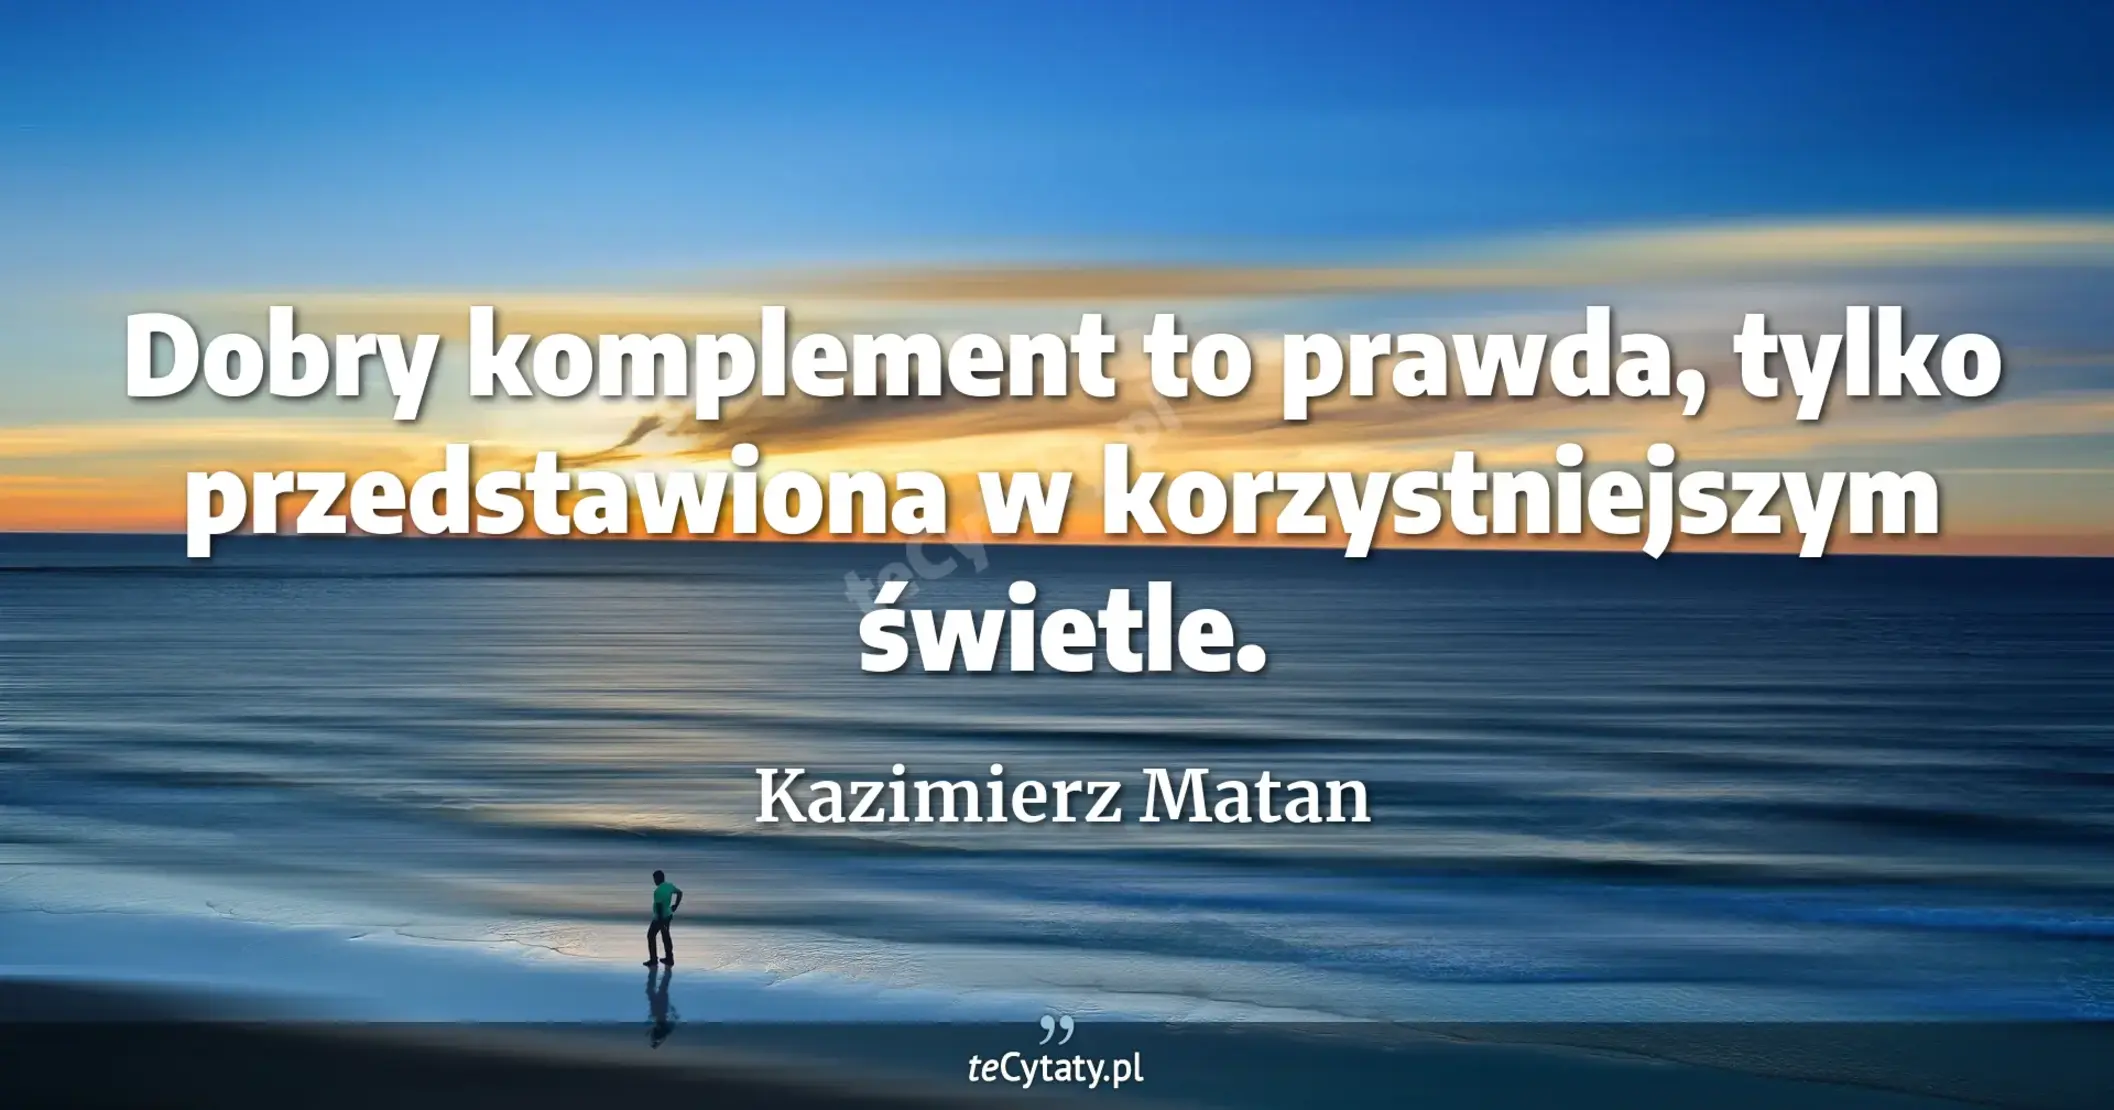 Dobry komplement to prawda, tylko przedstawiona w korzystniejszym świetle. - Kazimierz Matan